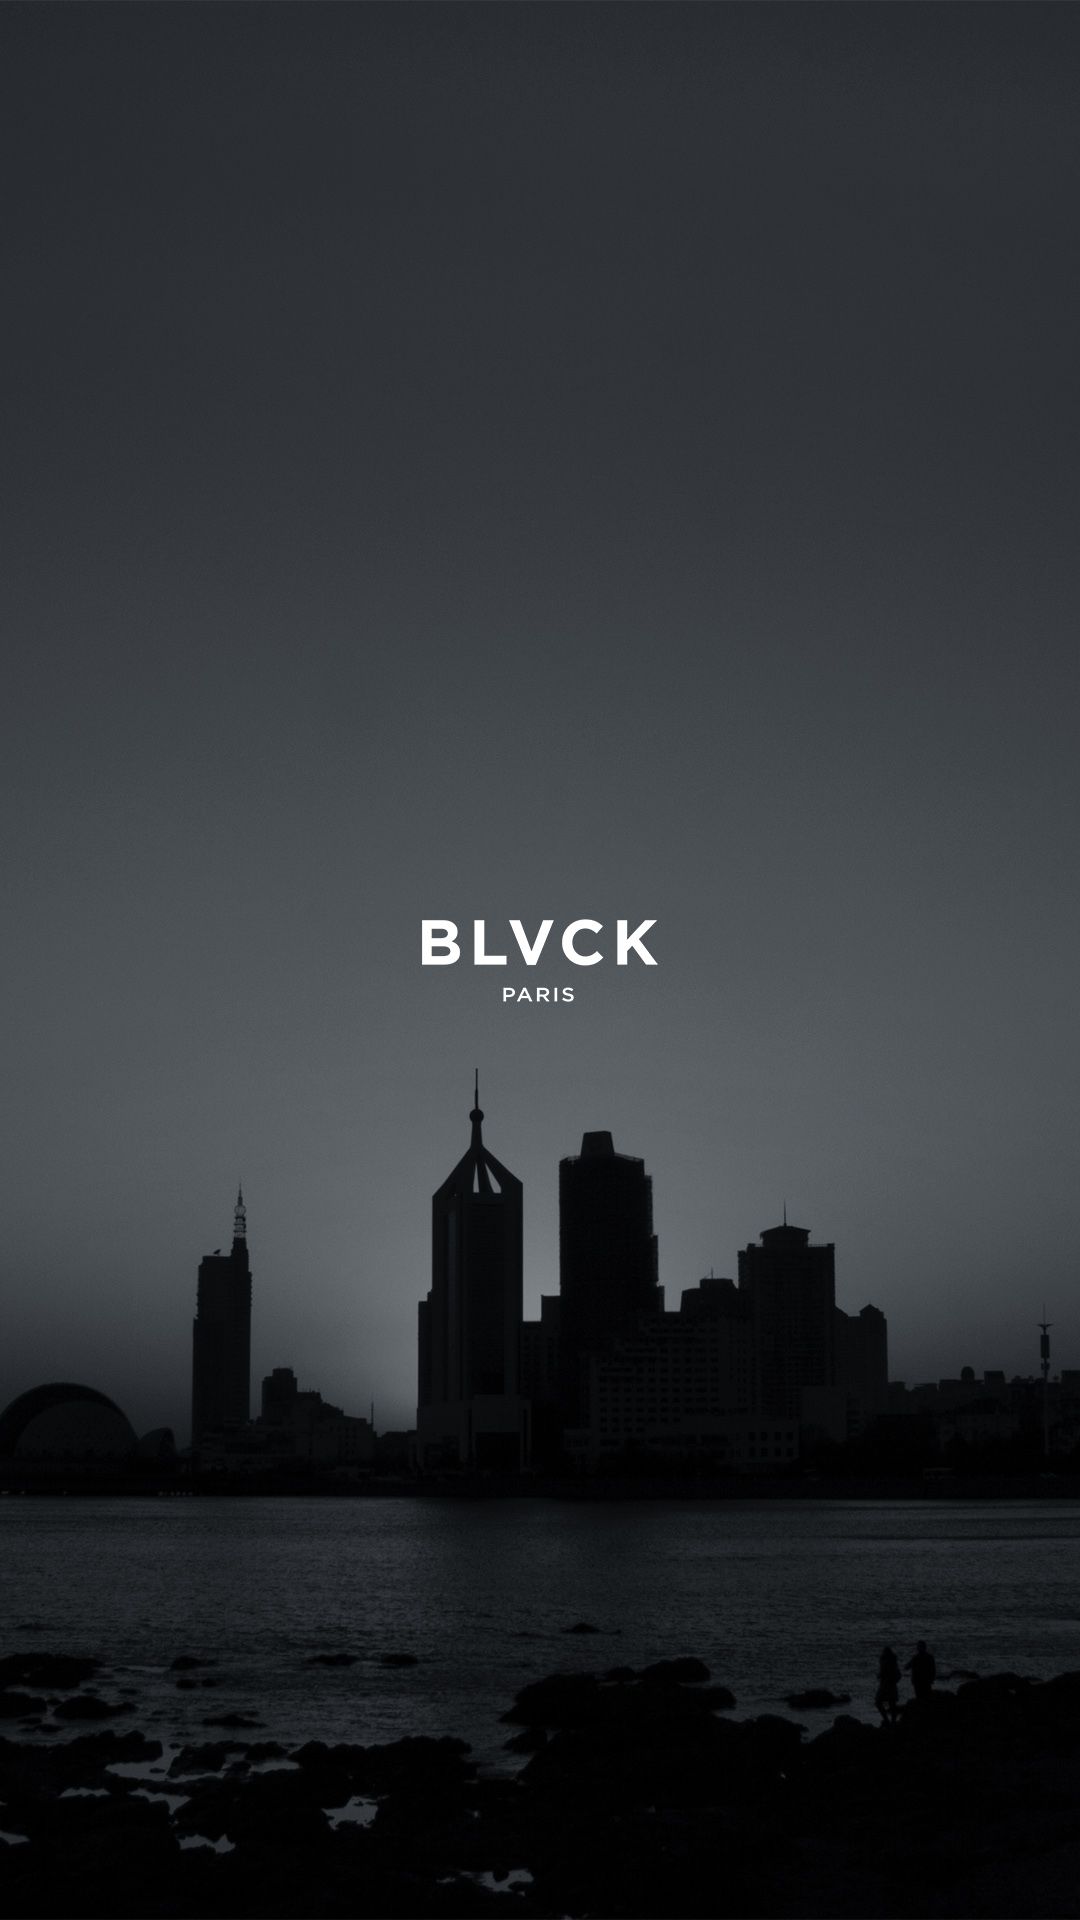 BLVCK Paris ideas. blvck, black aesthetic, black wallpaper